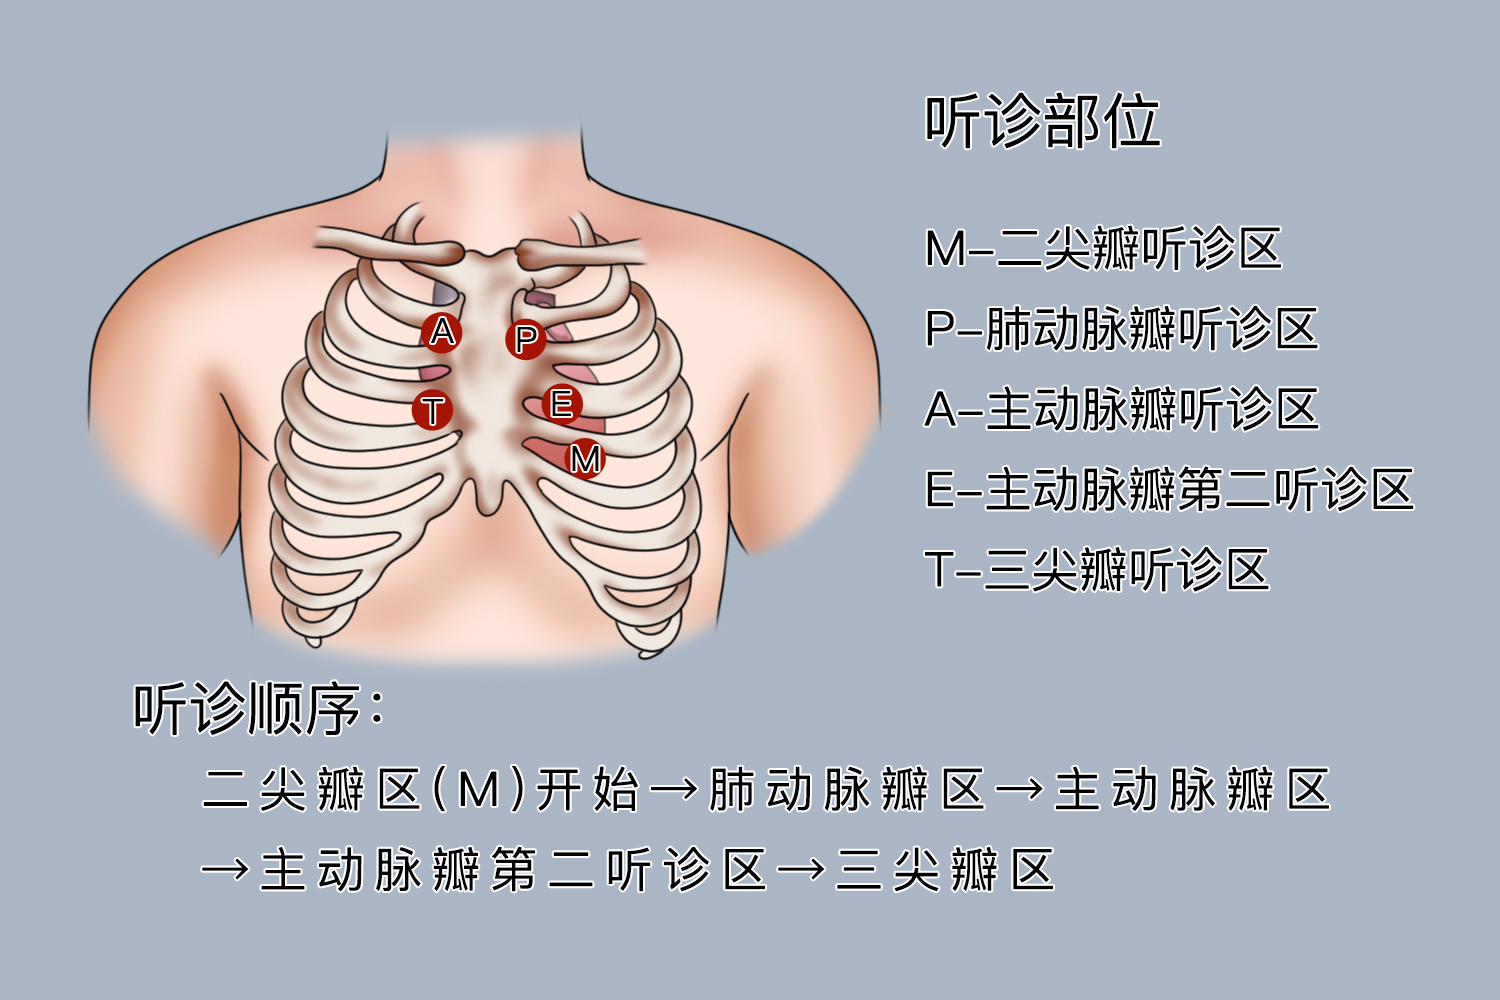 肺听诊部位示意图图片